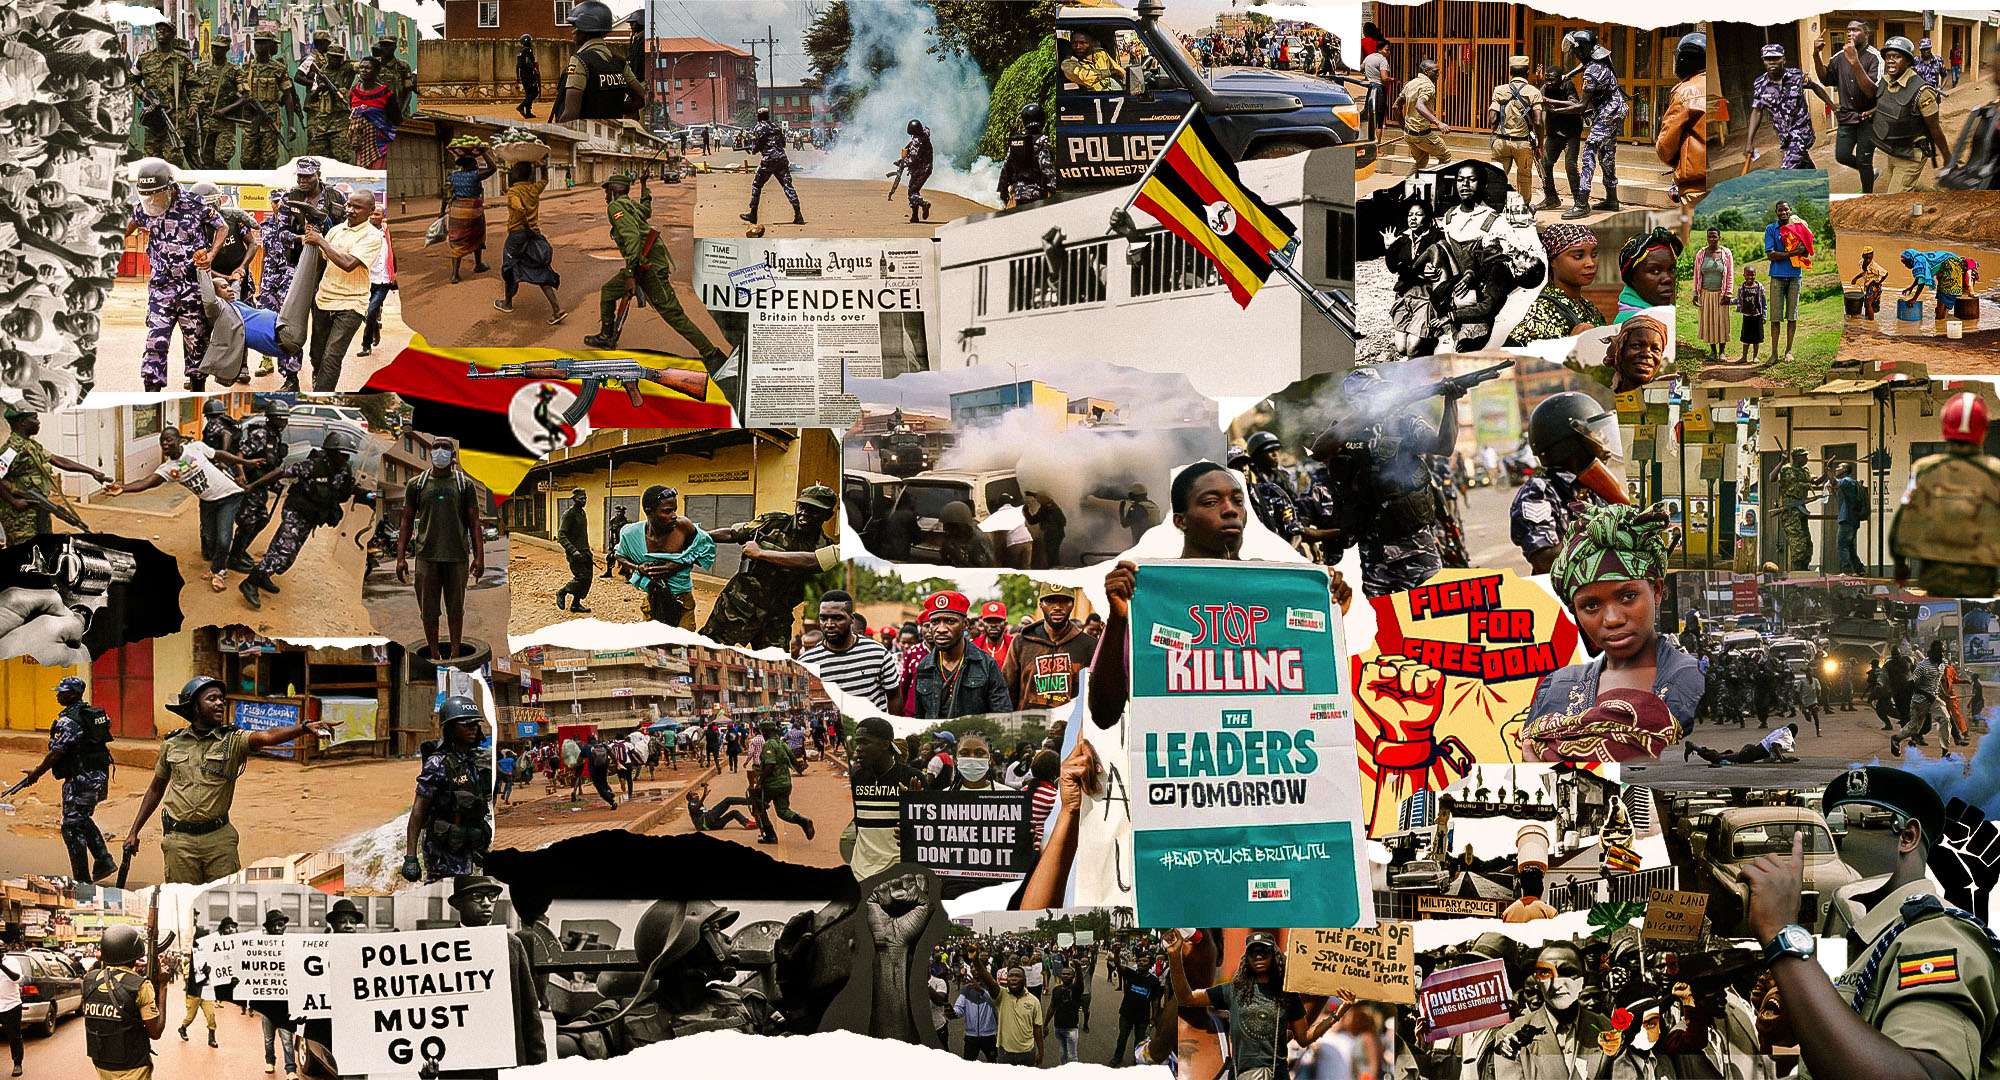 INJUSTICE IN UGANDA